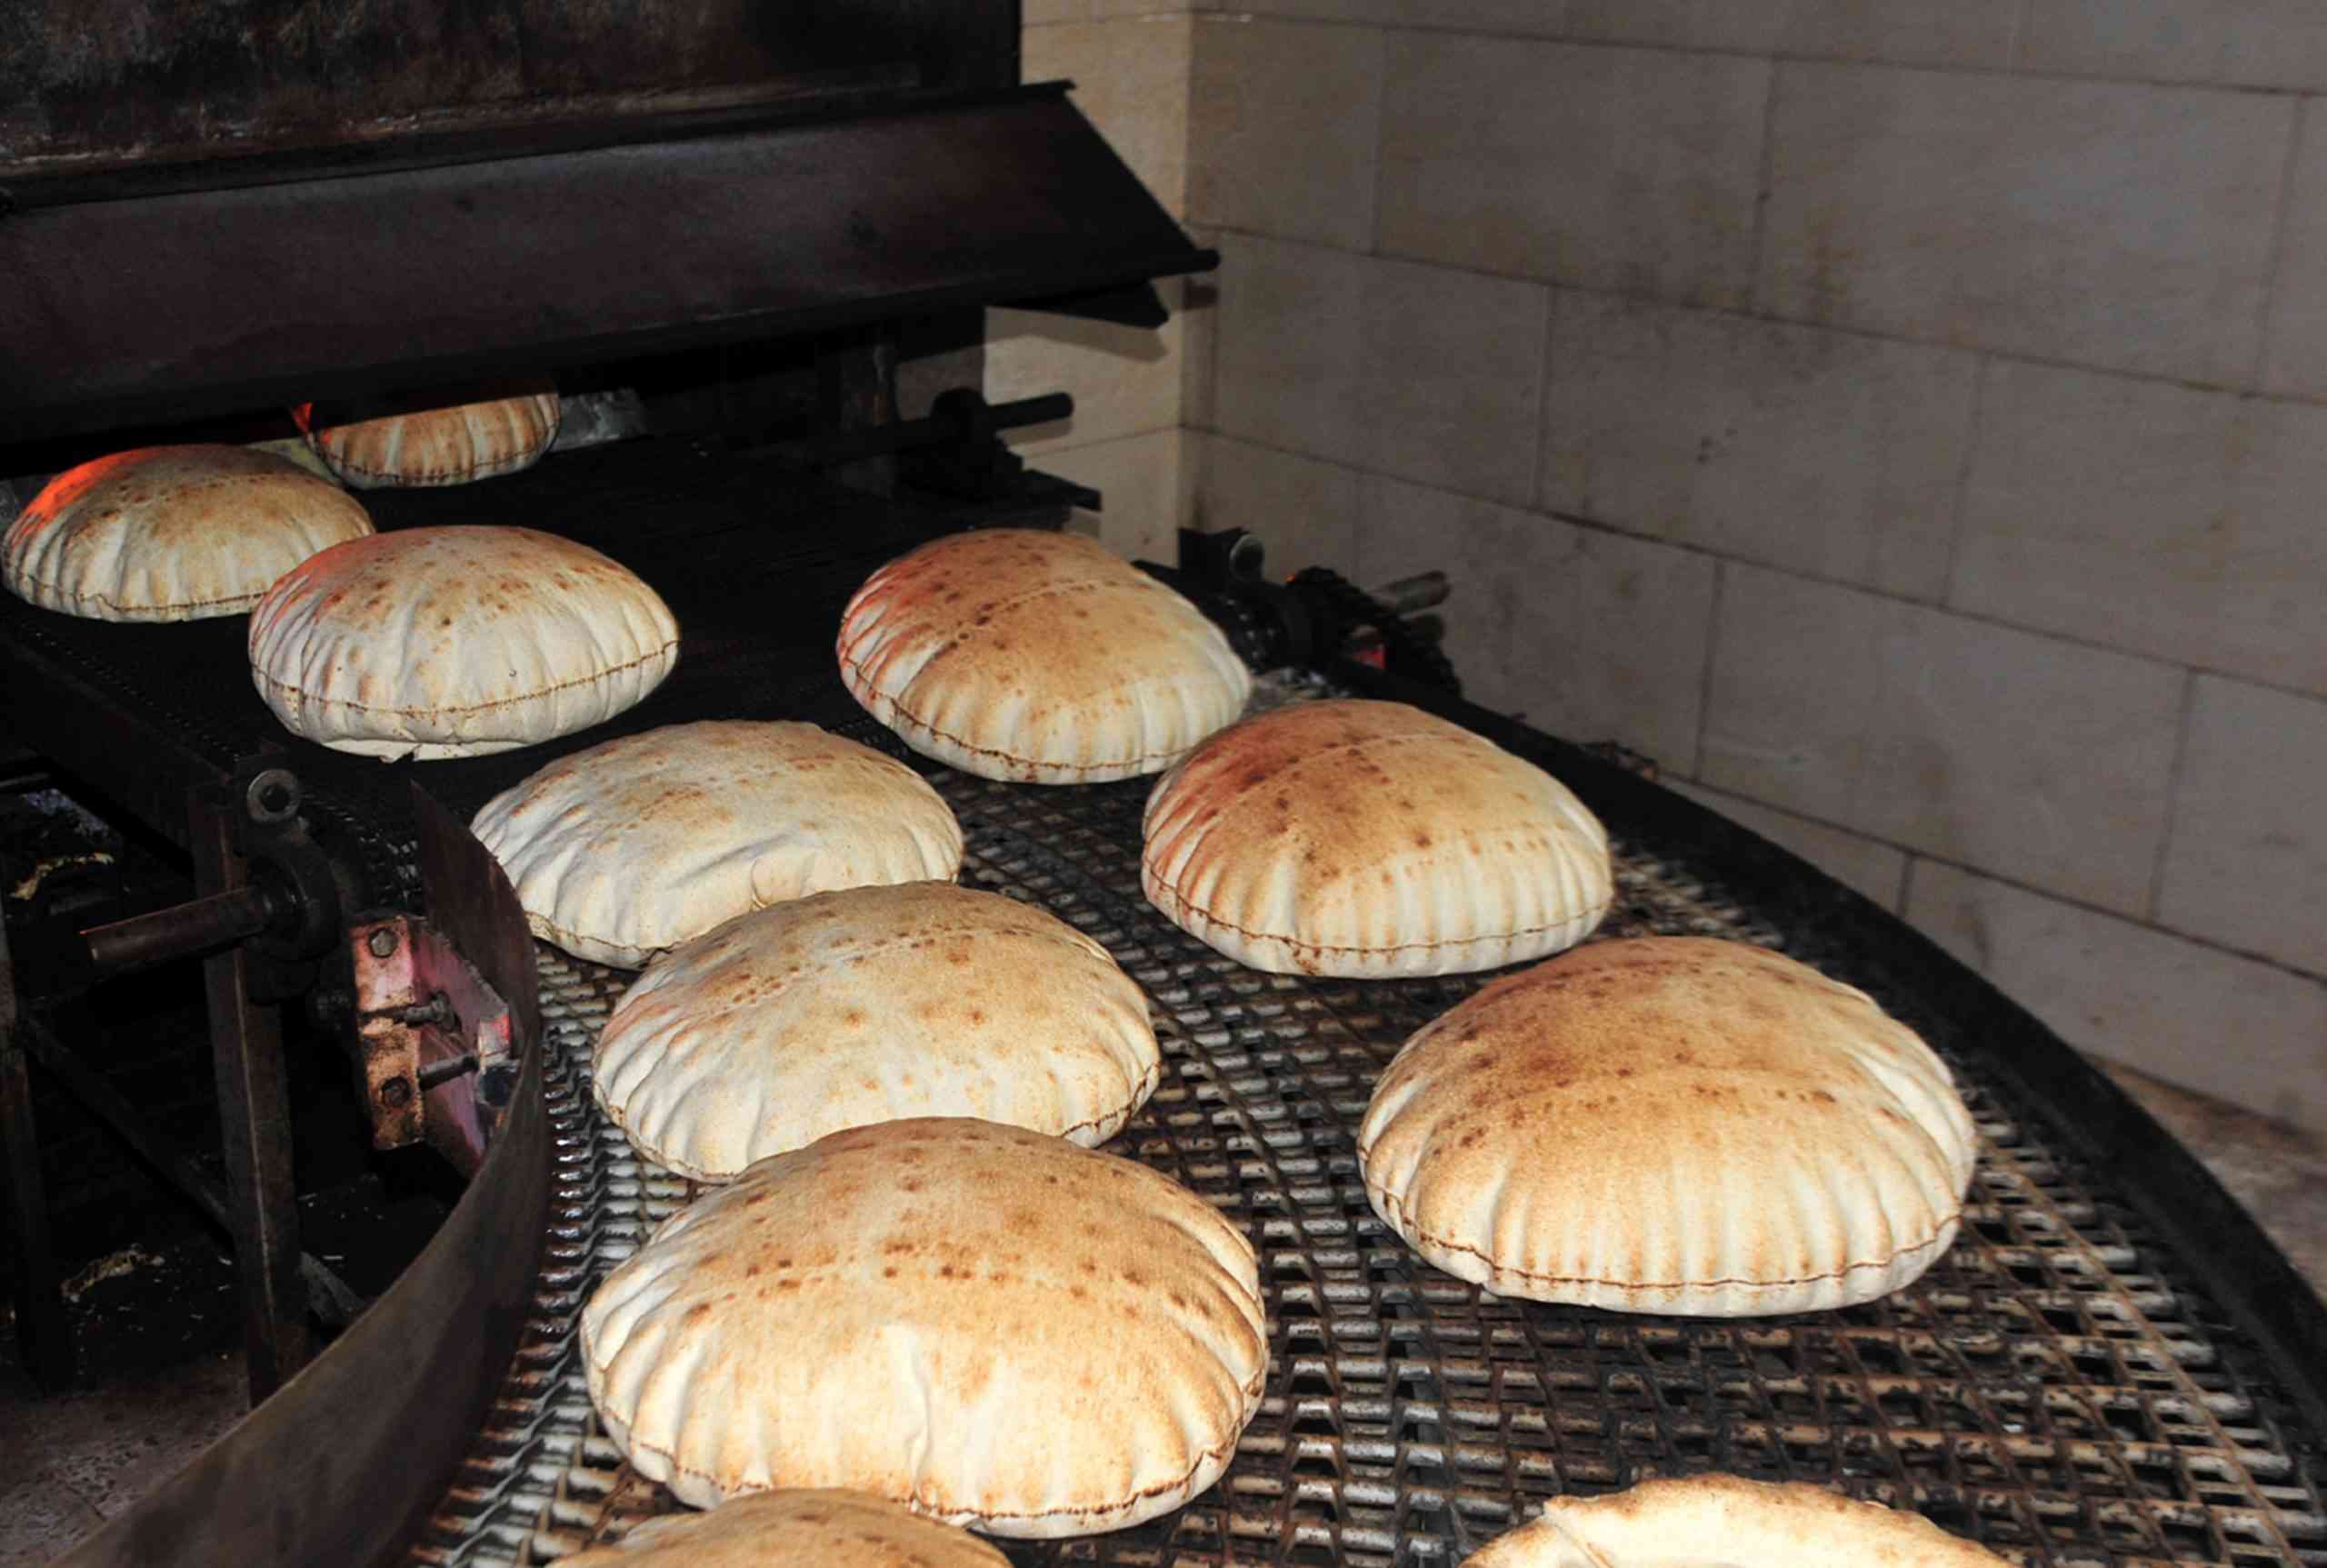 سلب وضرب عامل مخبز في عمان